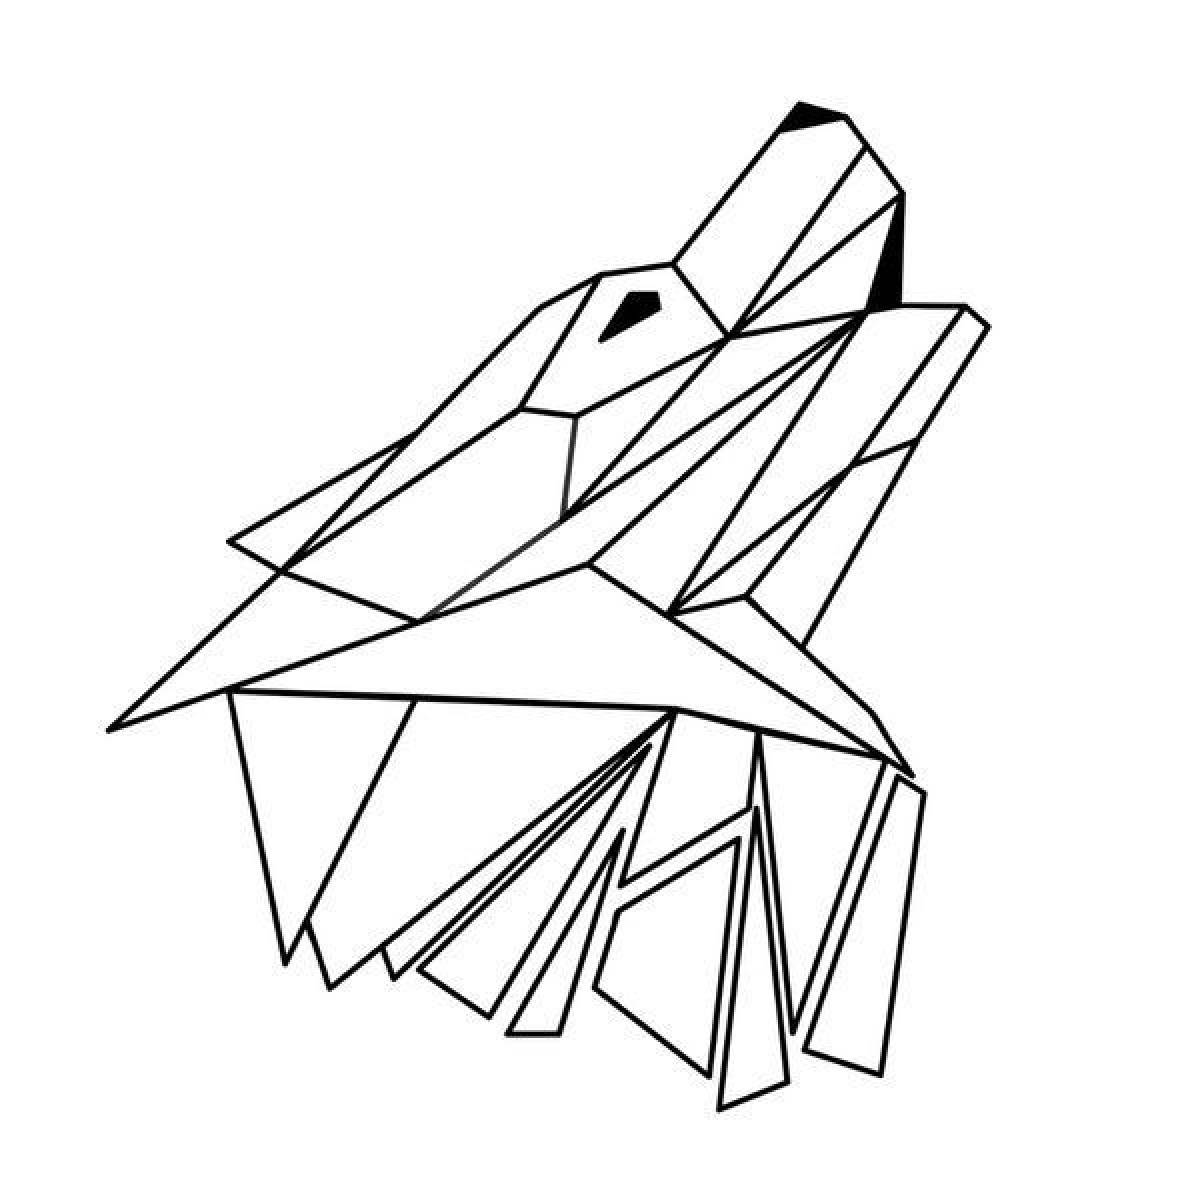 Origami wrlk